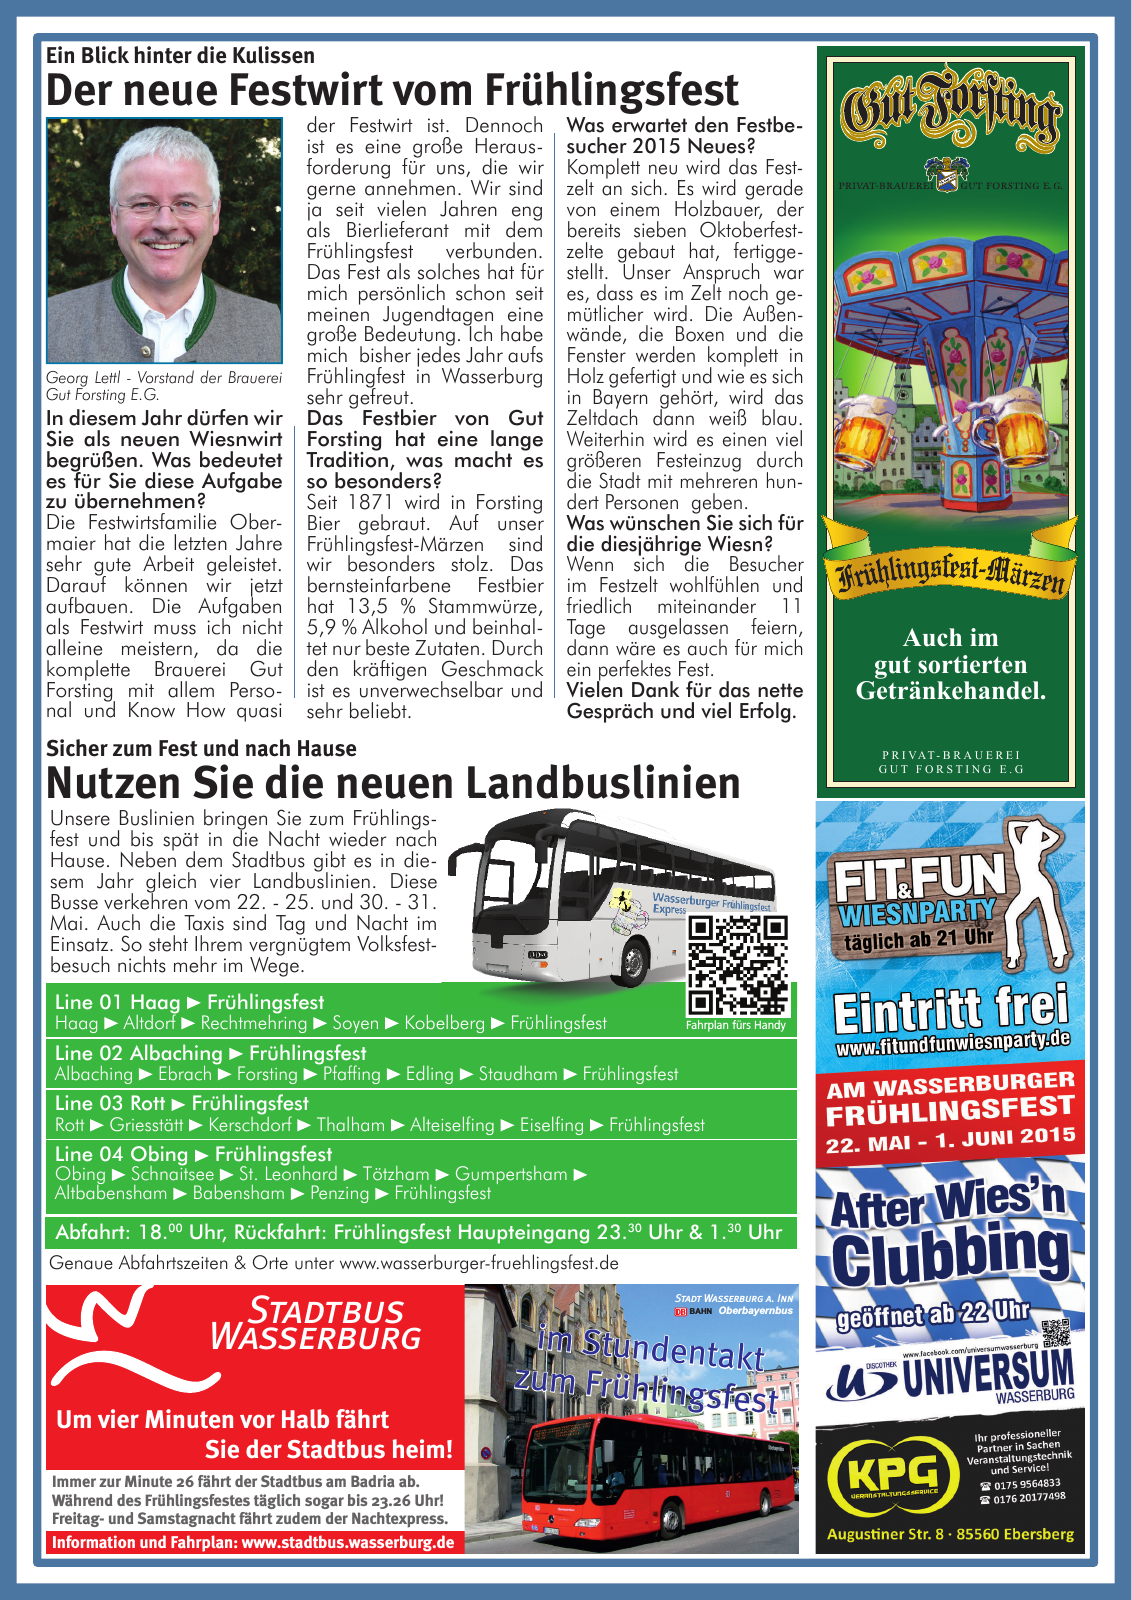 Vorschau Wasserburger Wiesnblattl 2015 Ausgabe 1 Seite 4